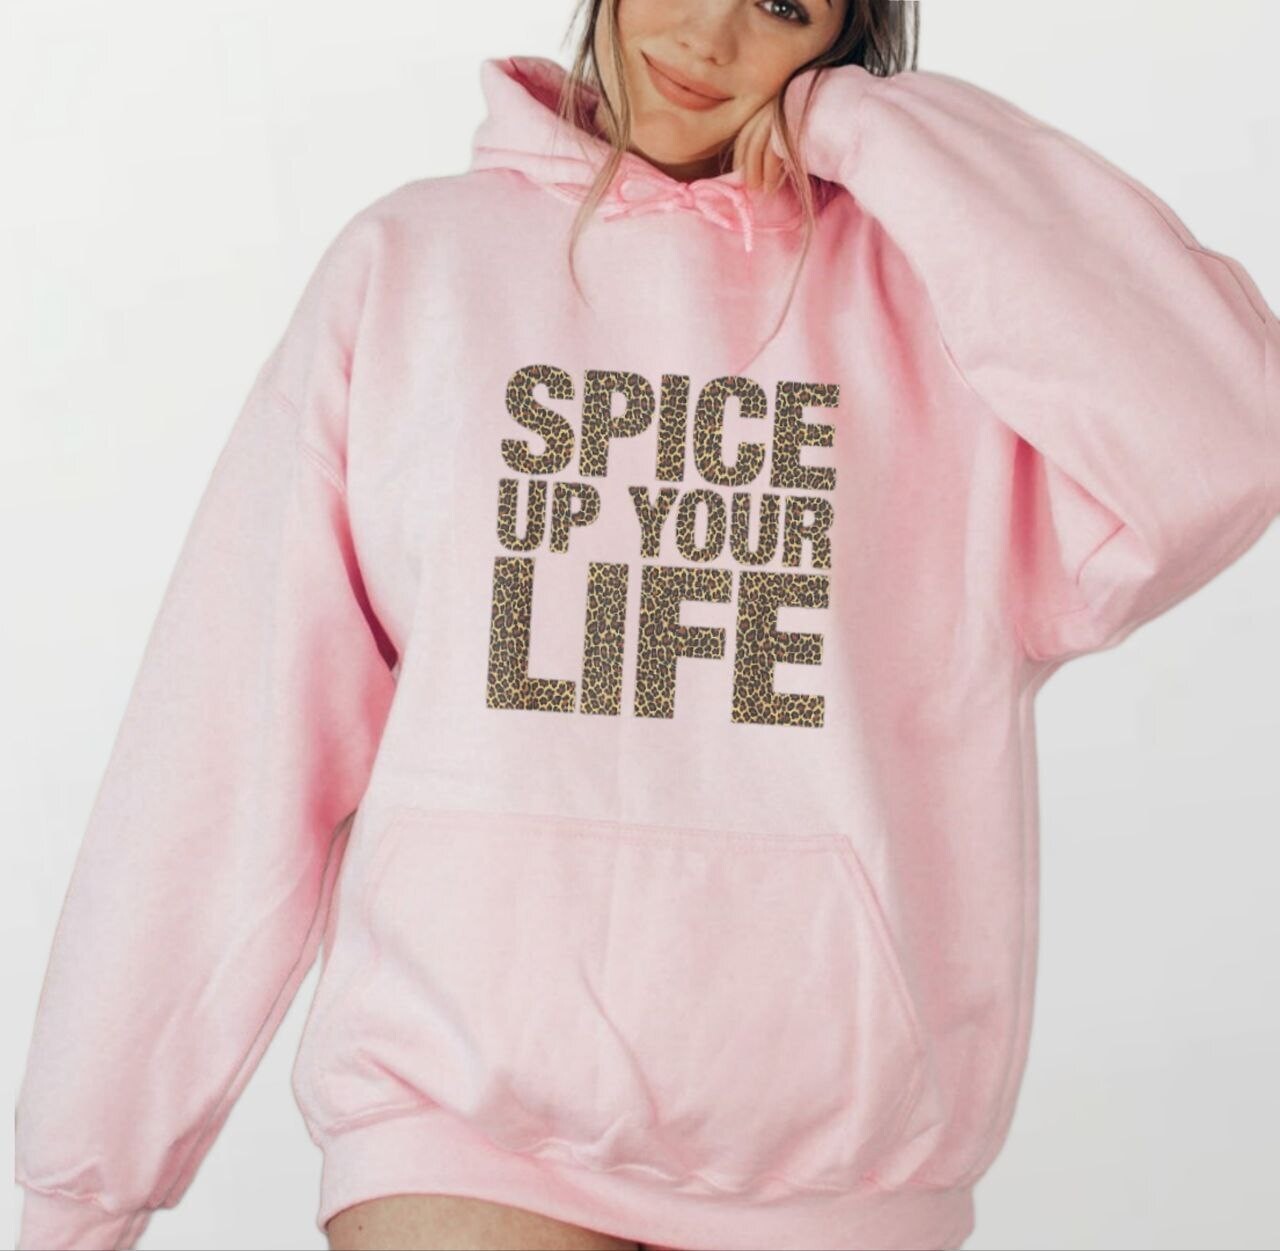 Spice_Women's Elite Hoodie pink